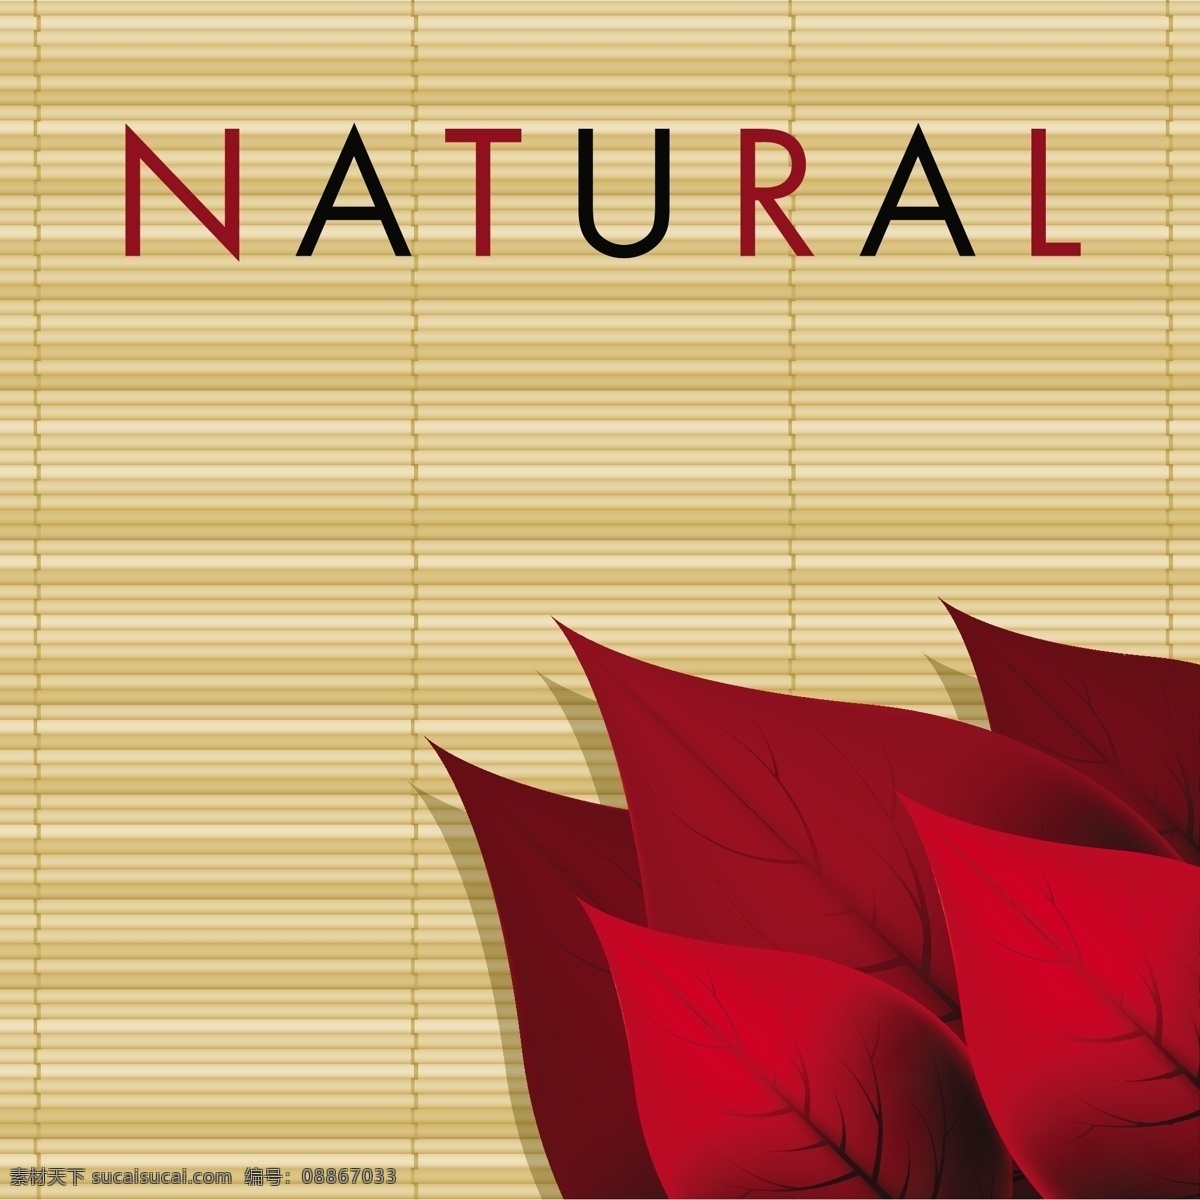 精美 树叶 广告 背景 矢量 红叶 绿叶 矢量背景 矢量素材 叶子 自然 自然生态 natural 竹帘 矢量图 其他矢量图